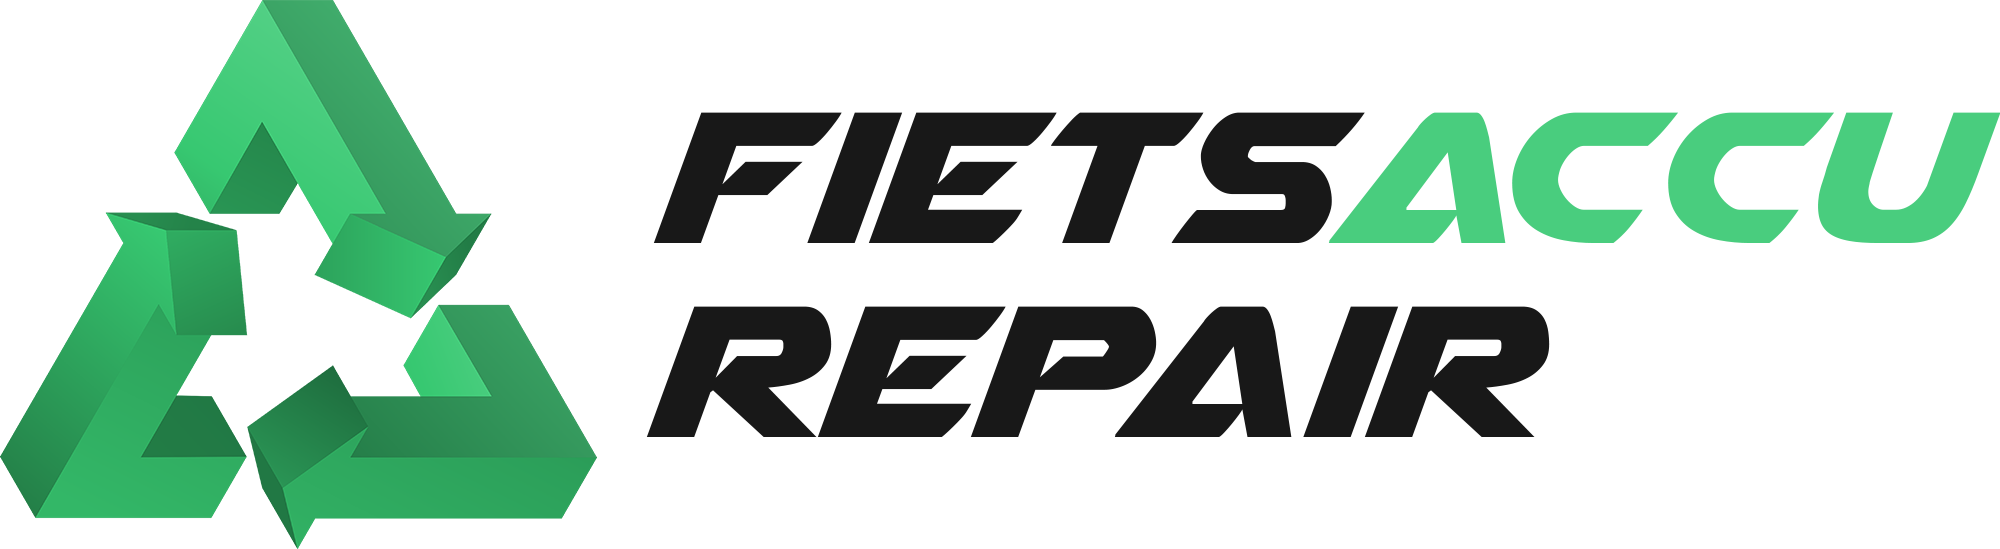 Fietsaccu Repair logo1 website